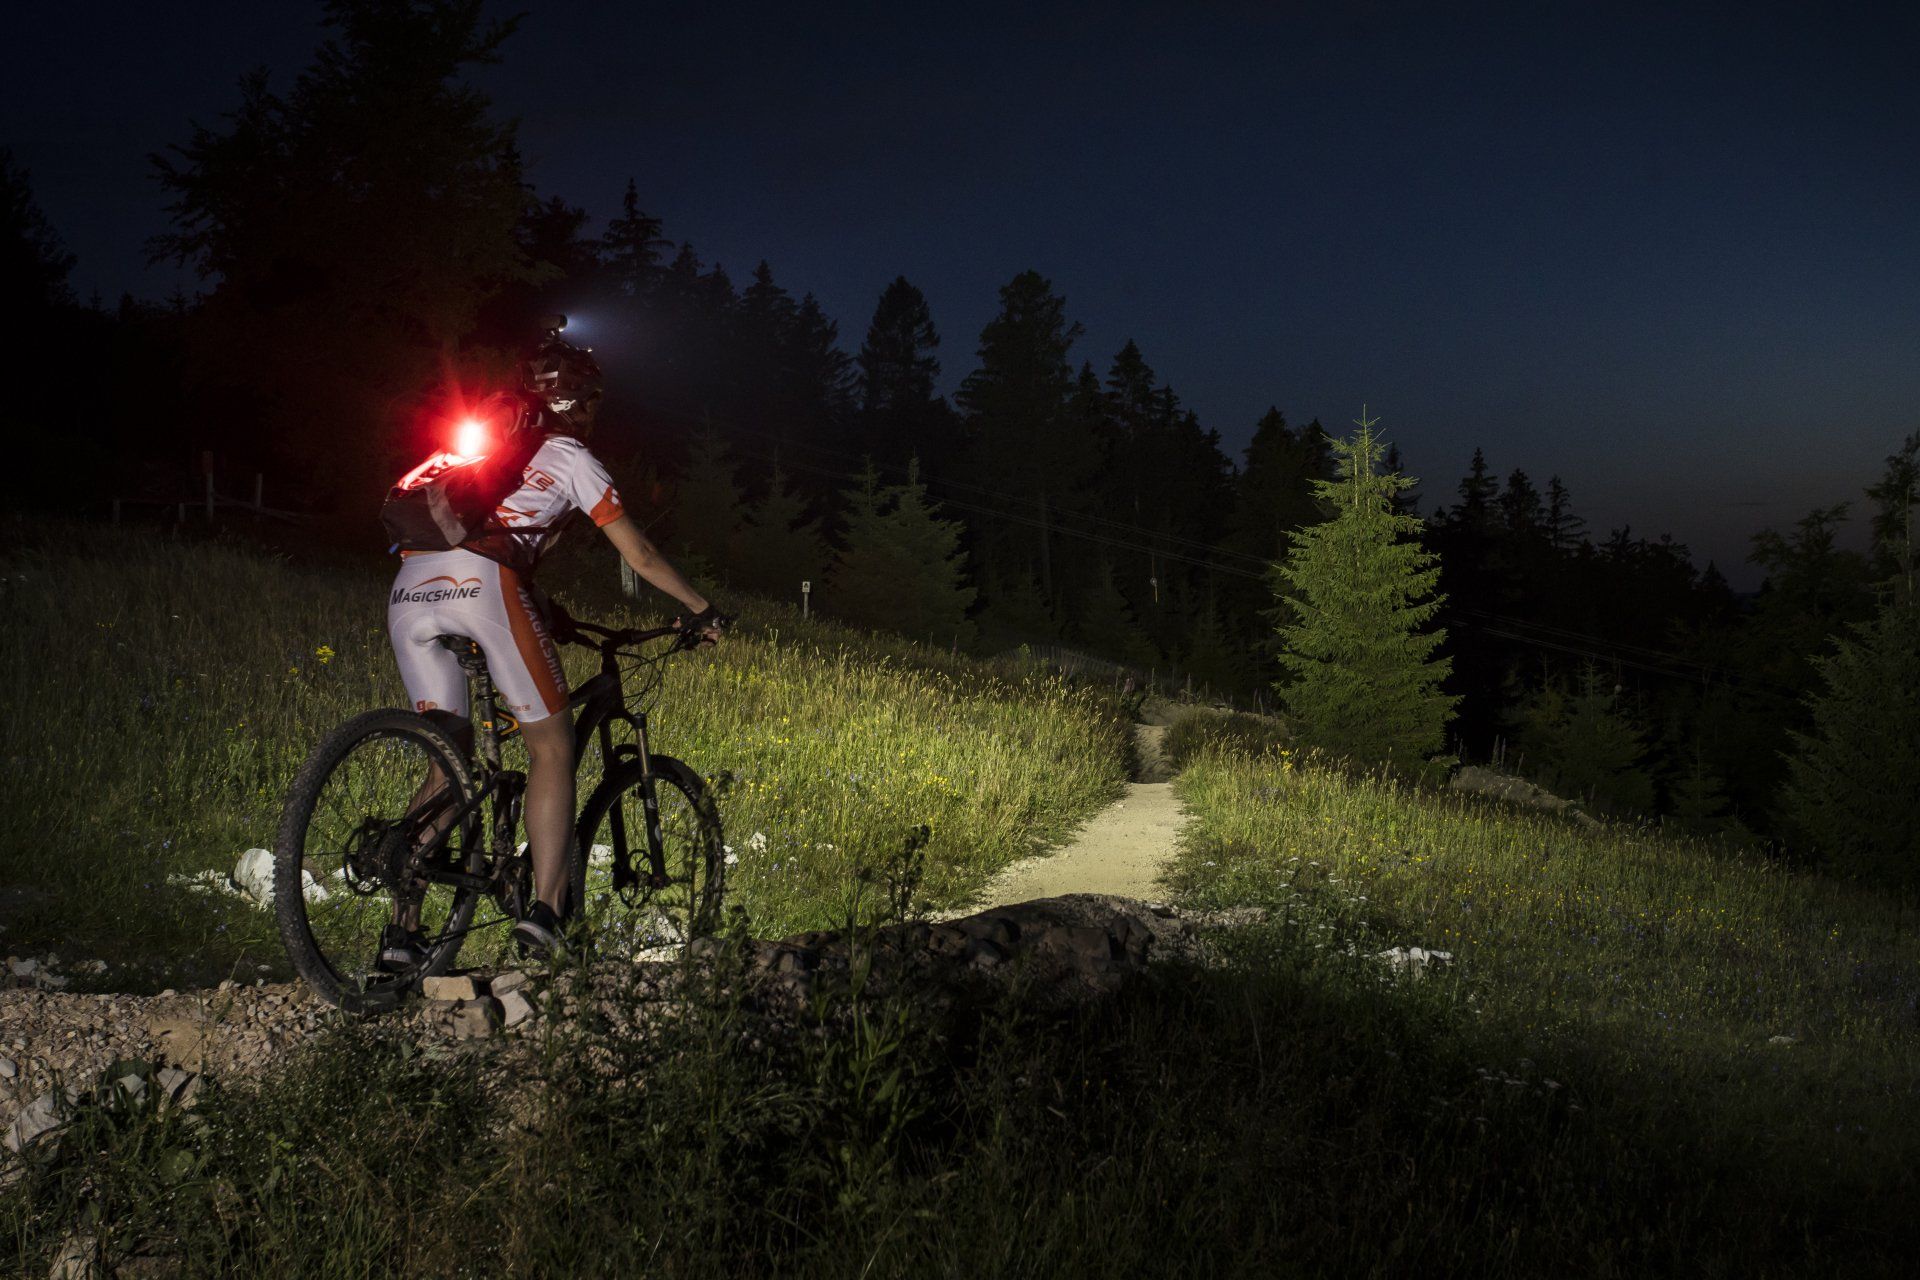 Magicshine Helmlampe Monteer 6500 mit 6 Leuchten bei Sonnenuntergang im Wald und auf der Wiese mit dem Fahrrad oder Mountainbike, offroad inklusive Rücklicht des Fahrradfahrers SeeMee 180 im Trailpark